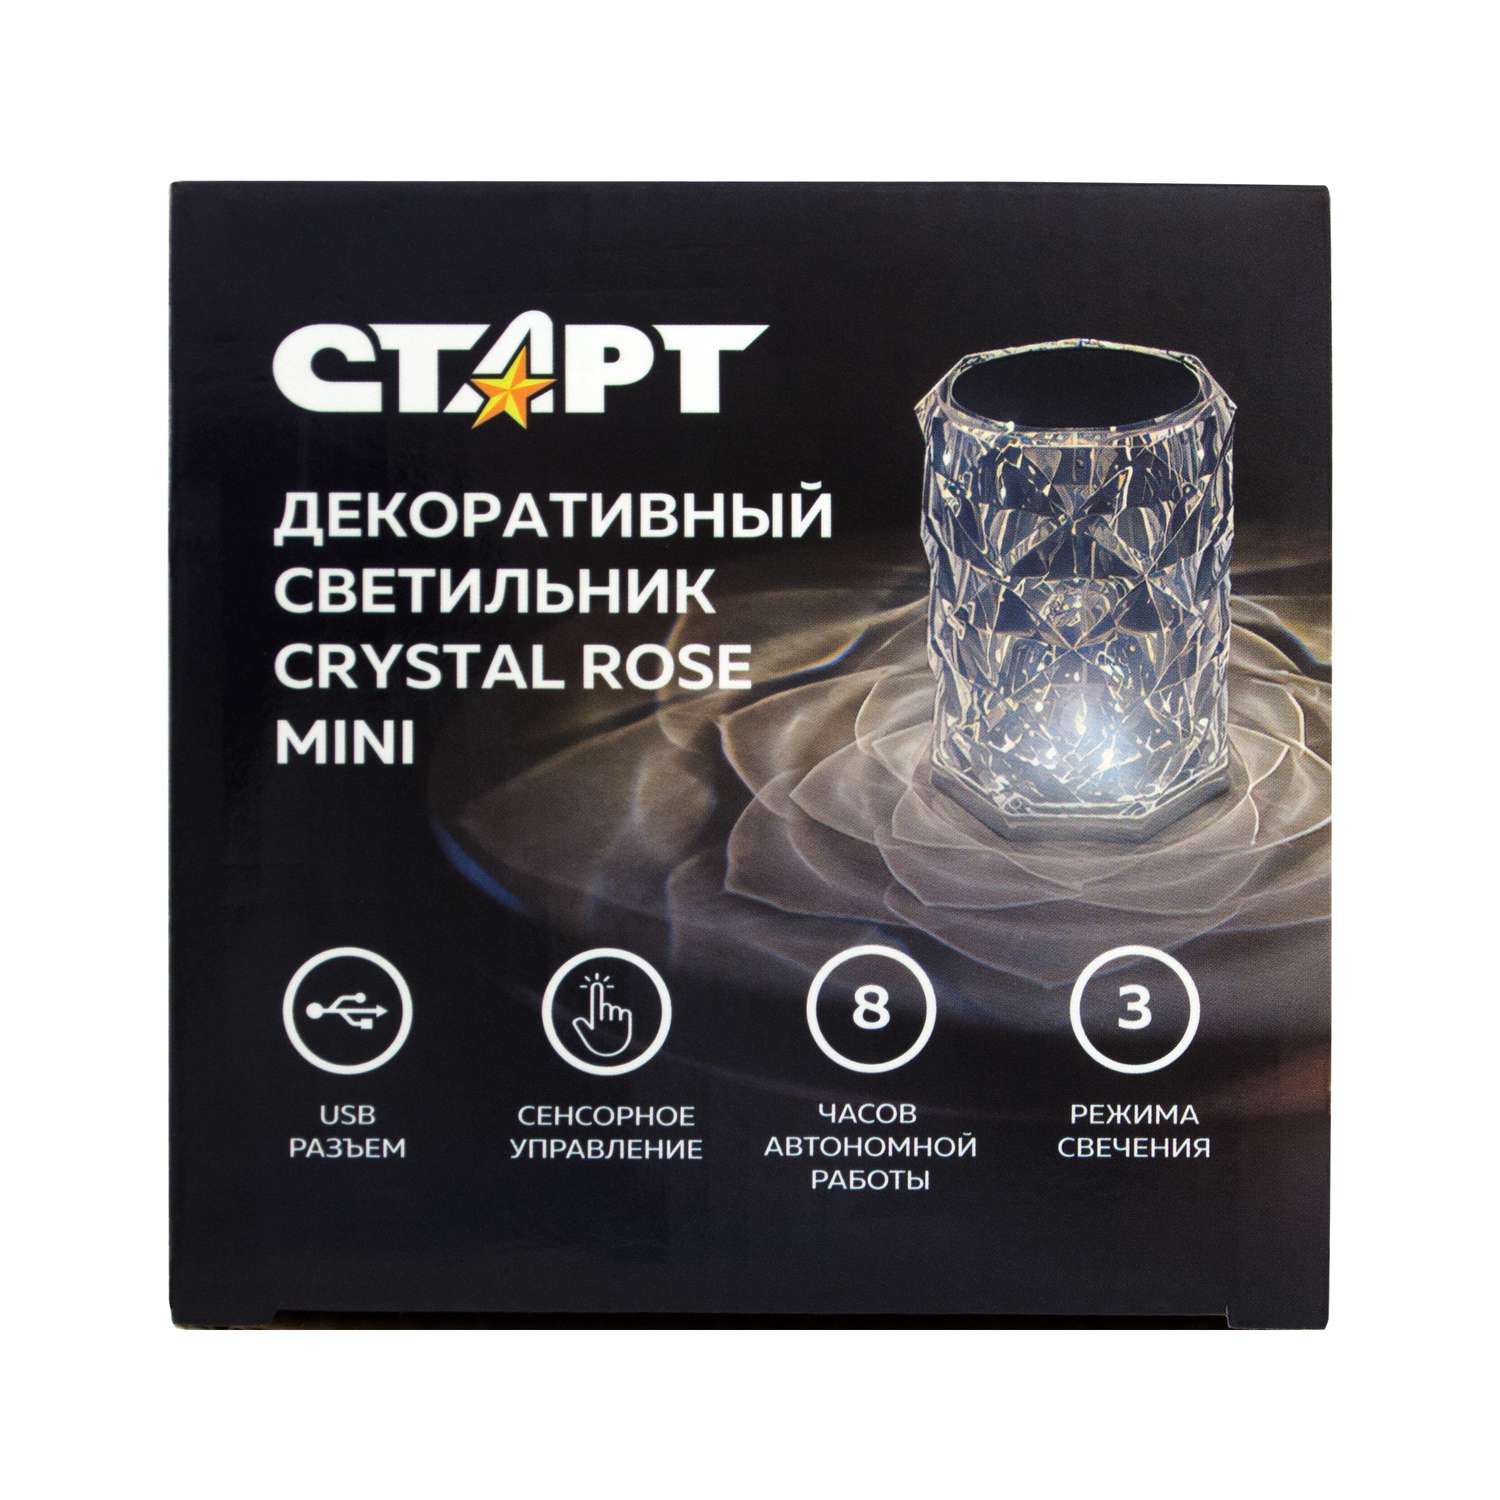 Светильник ночник СТАРТ декоративный кристаллической формы Crystal Rose mini - фото 2